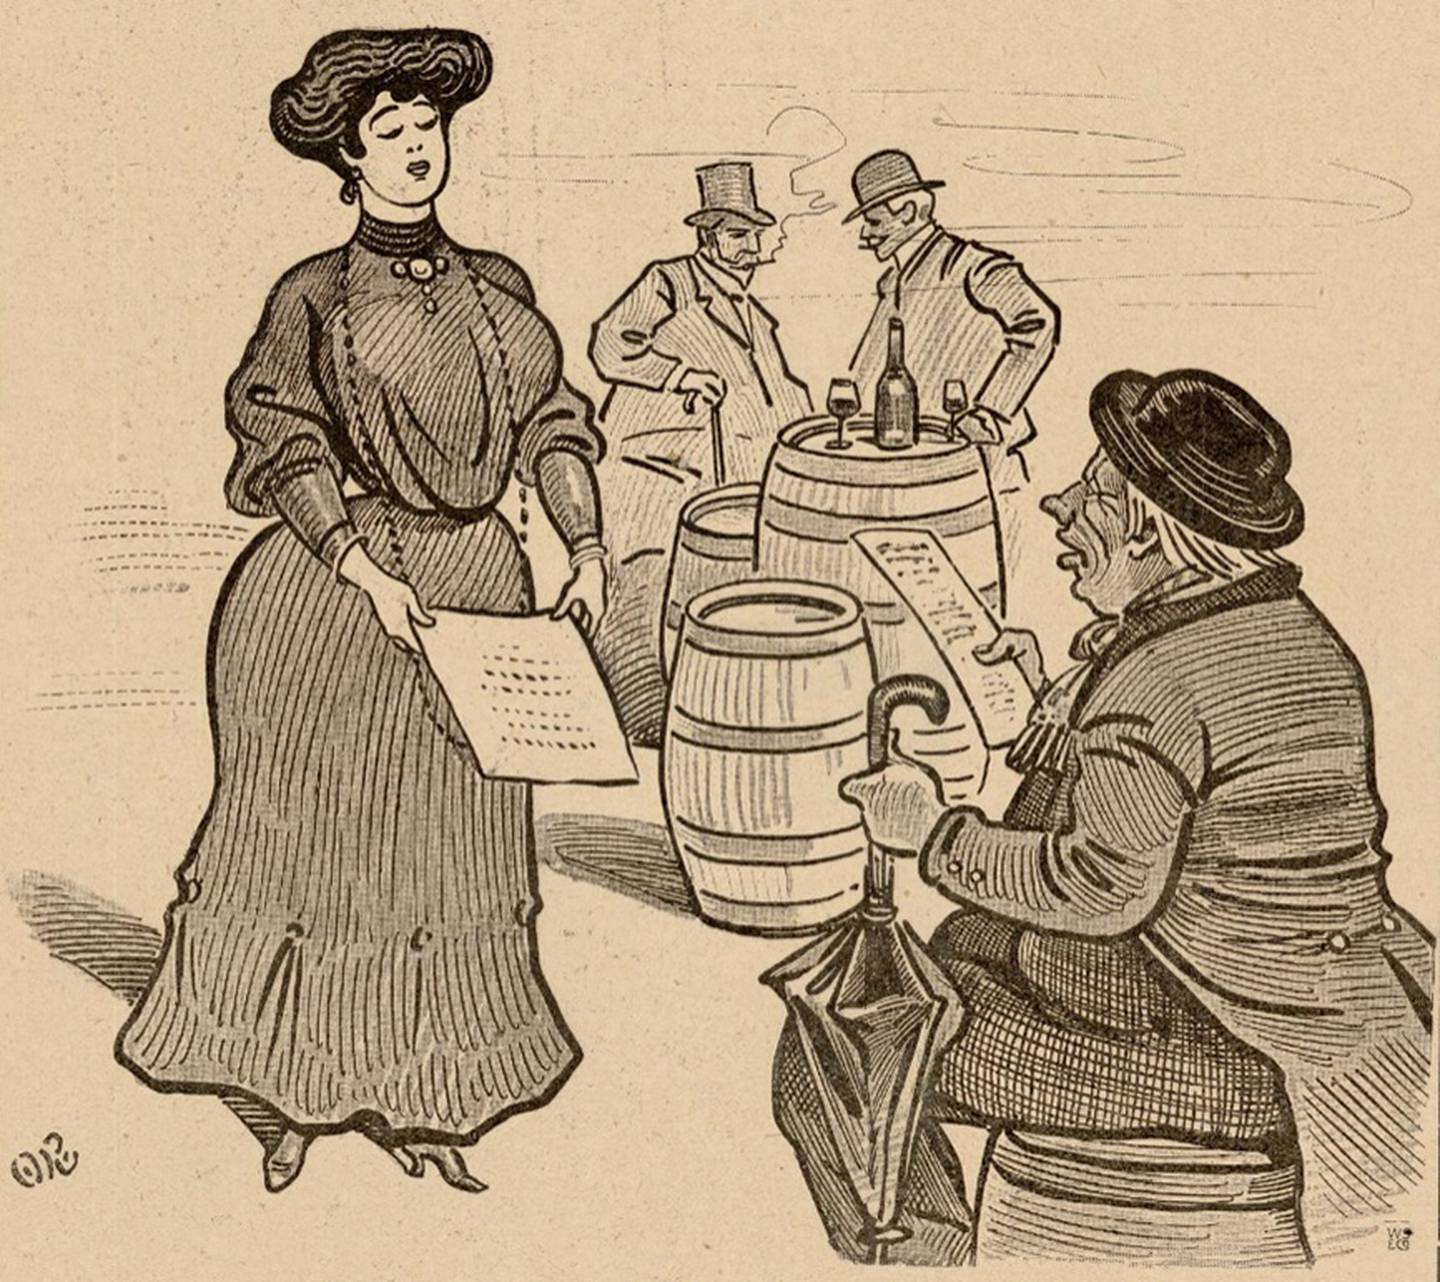 Tegning av mann med hatt som sitter på en tønne. Dame i kjole og hatt kommer med meny. I bakgrunnen står to herrer og røyker og drikker.